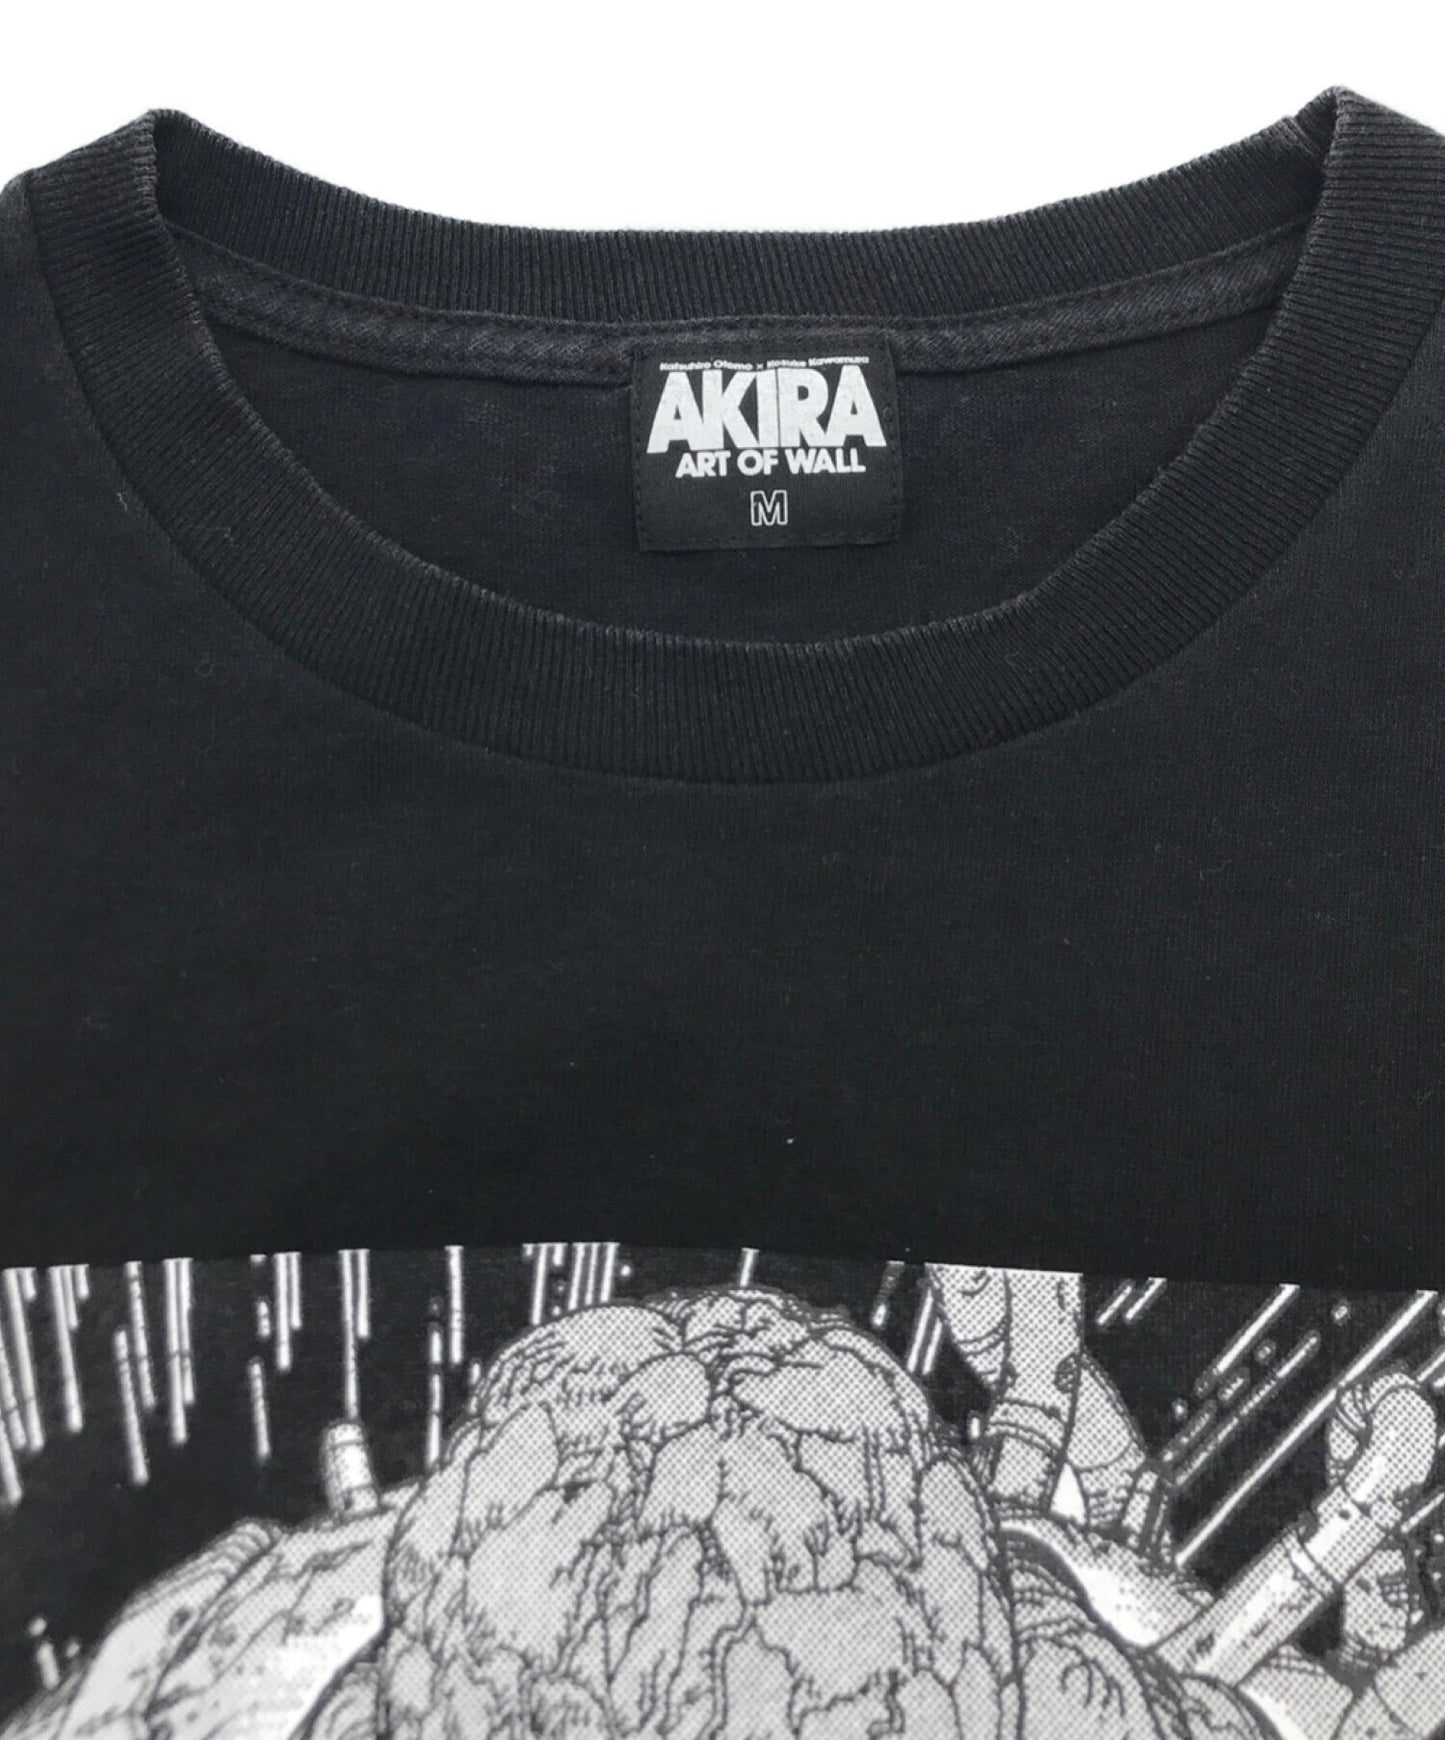 Akira Art of Wall Shibuya Parco Limited印刷T恤